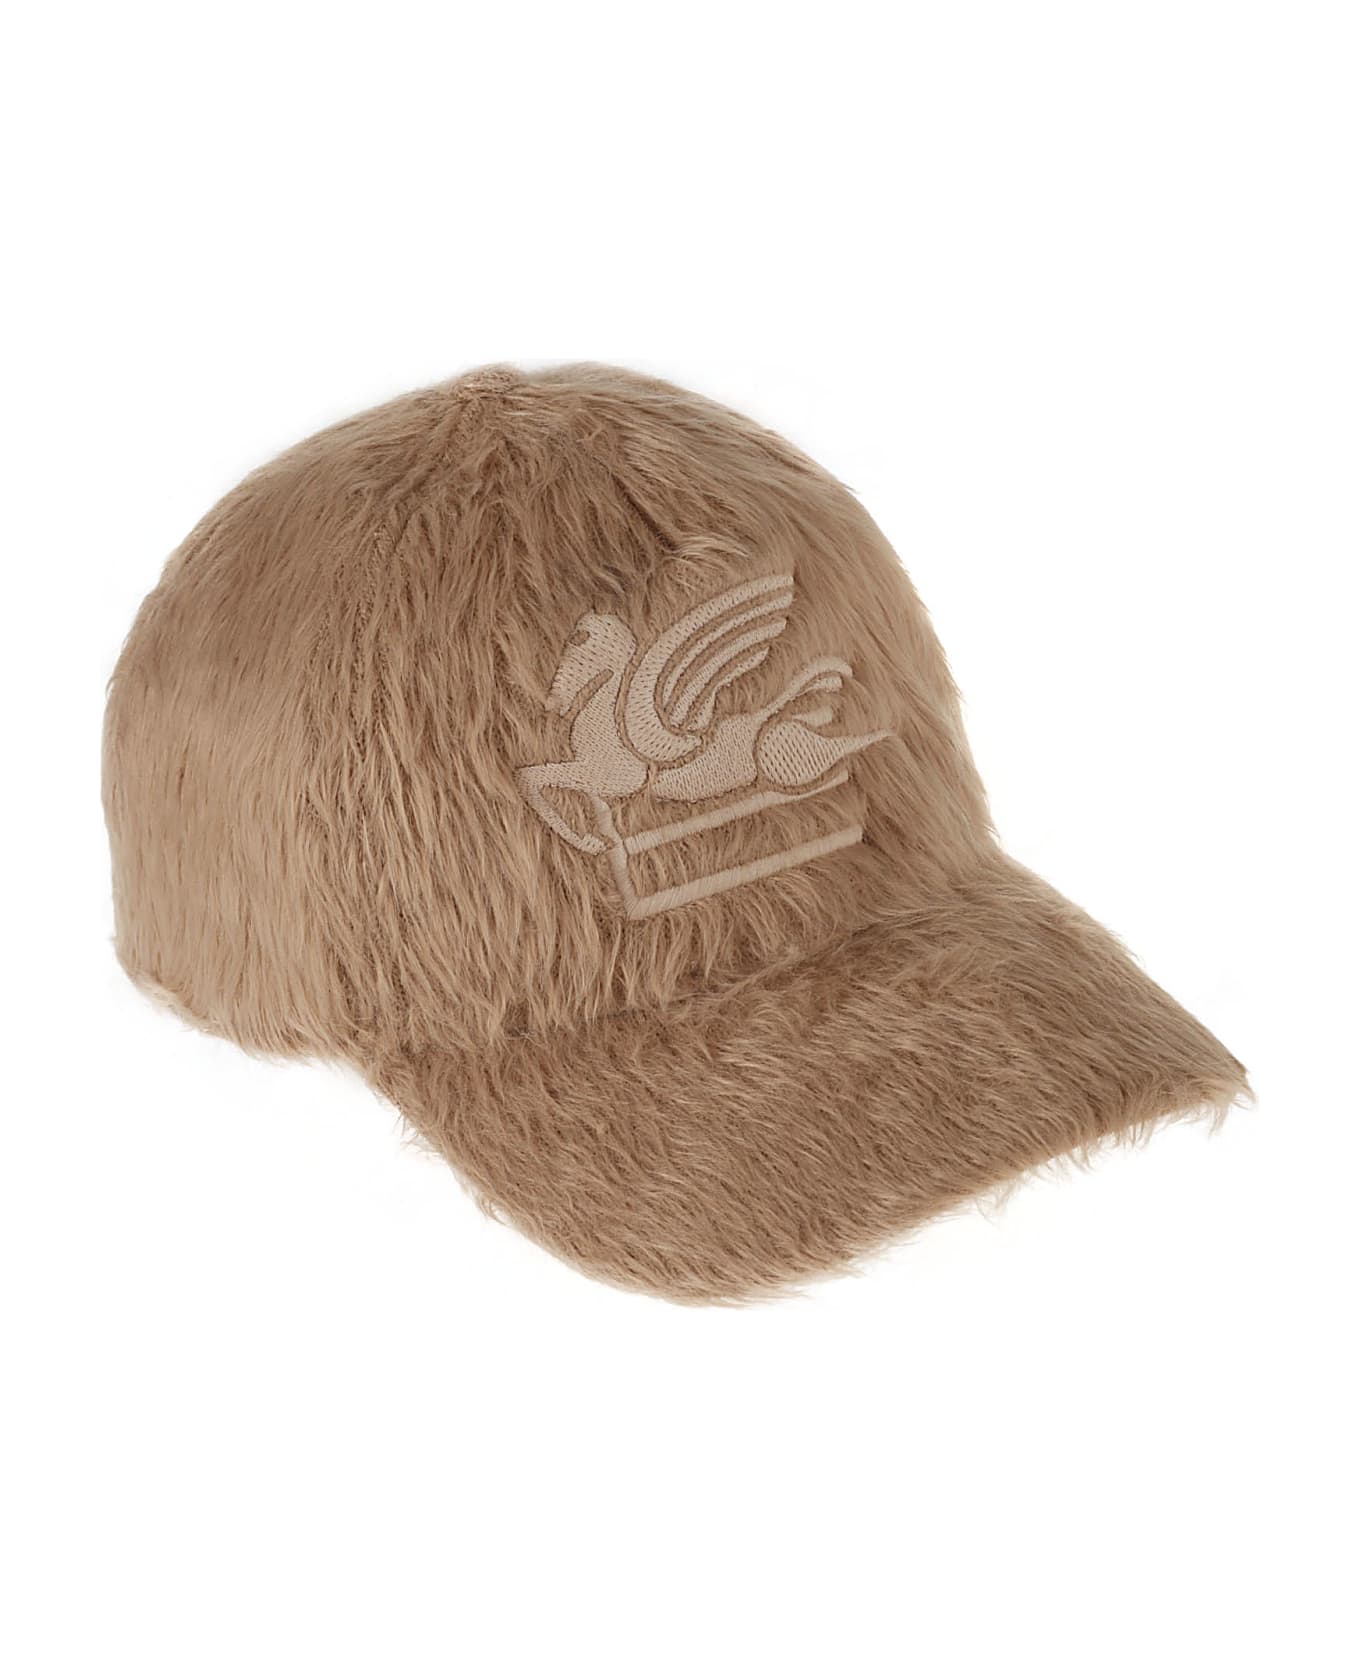 Etro Fur Coated Baseball Cap - Beige